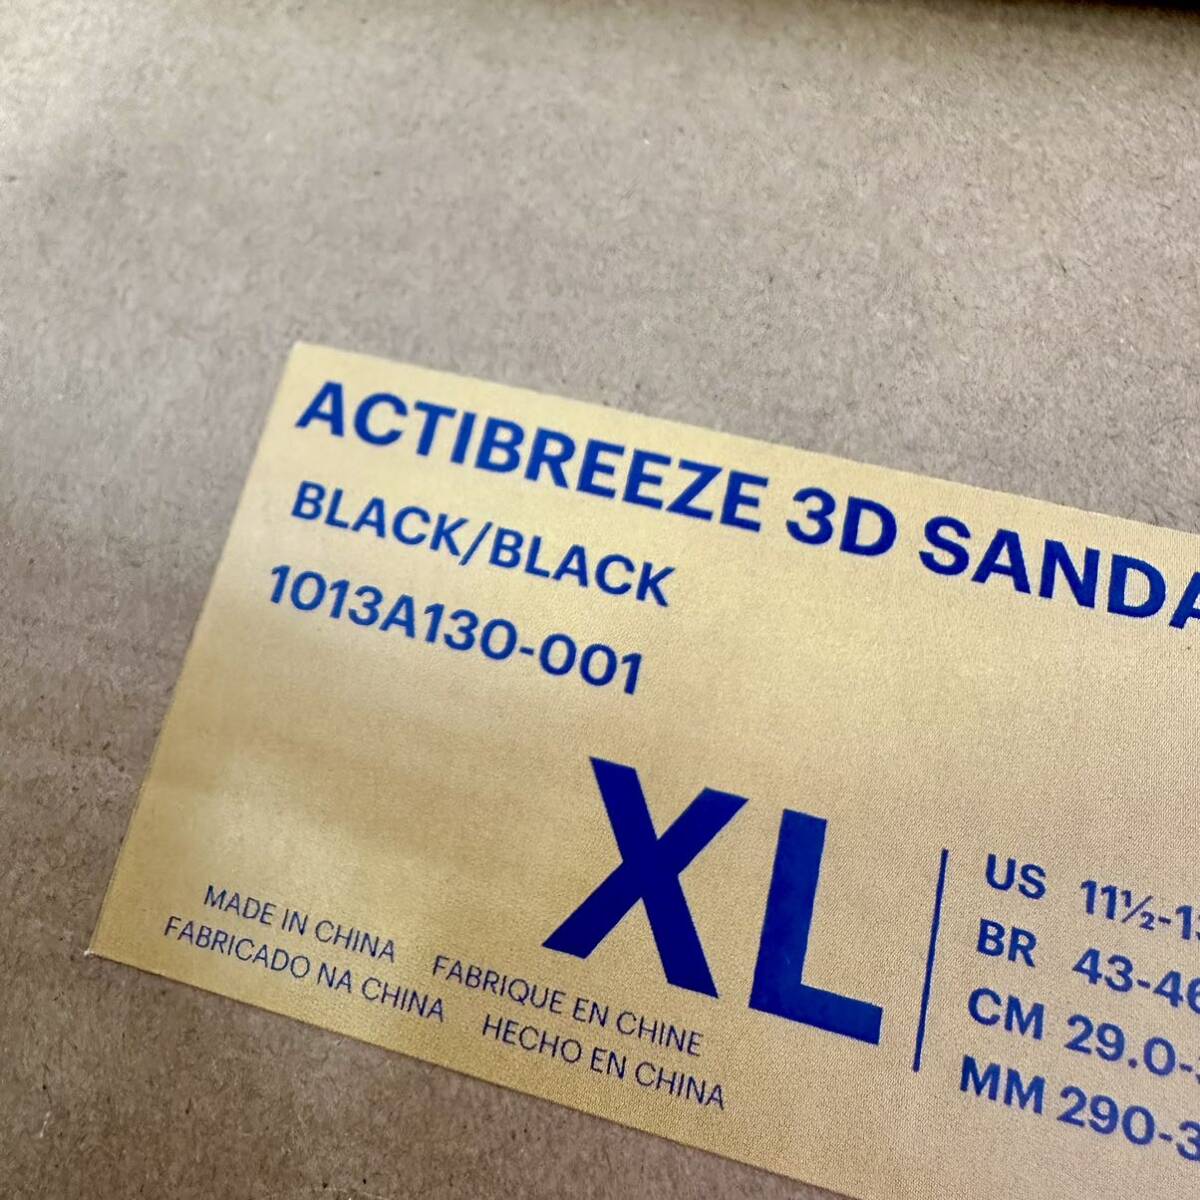 Asics Actibreeze 3D Sandal Black アシックス アクティブリーズ 3D サンダル ブラック_画像2